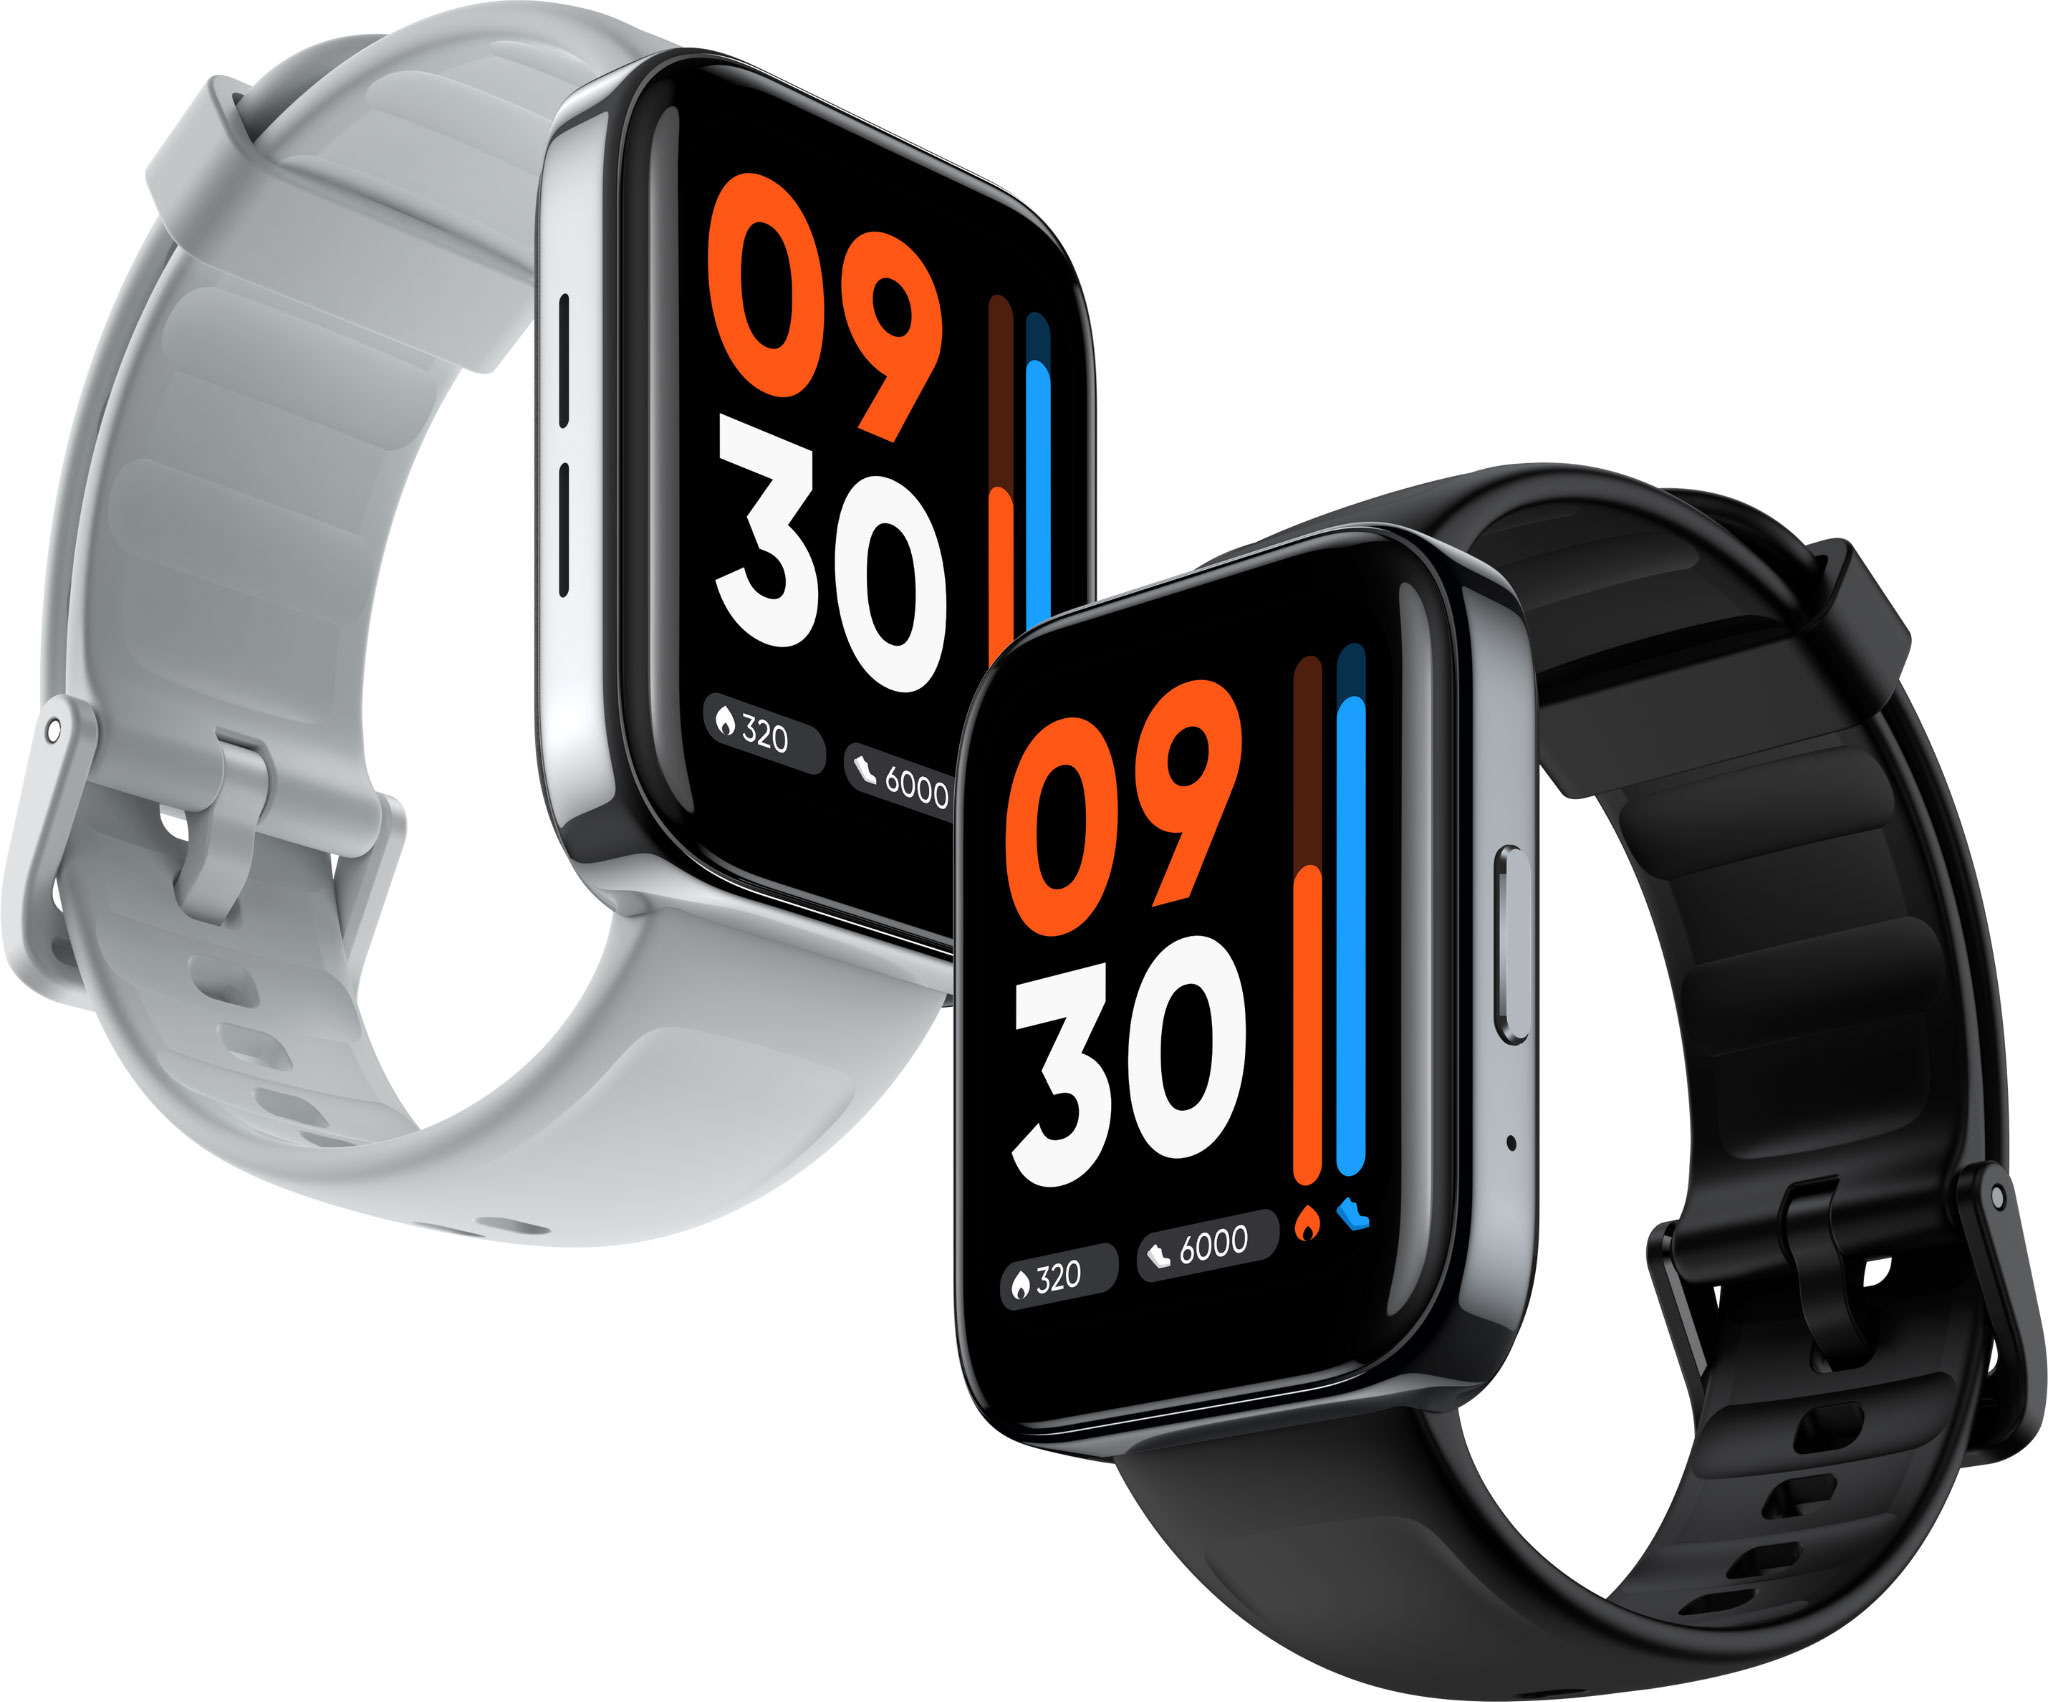 Smartwatch realme Watch 3 ra mắt thị trường Việt Nam – Nghe gọi ngay trên đồng hồ, màn hình ấn tượng